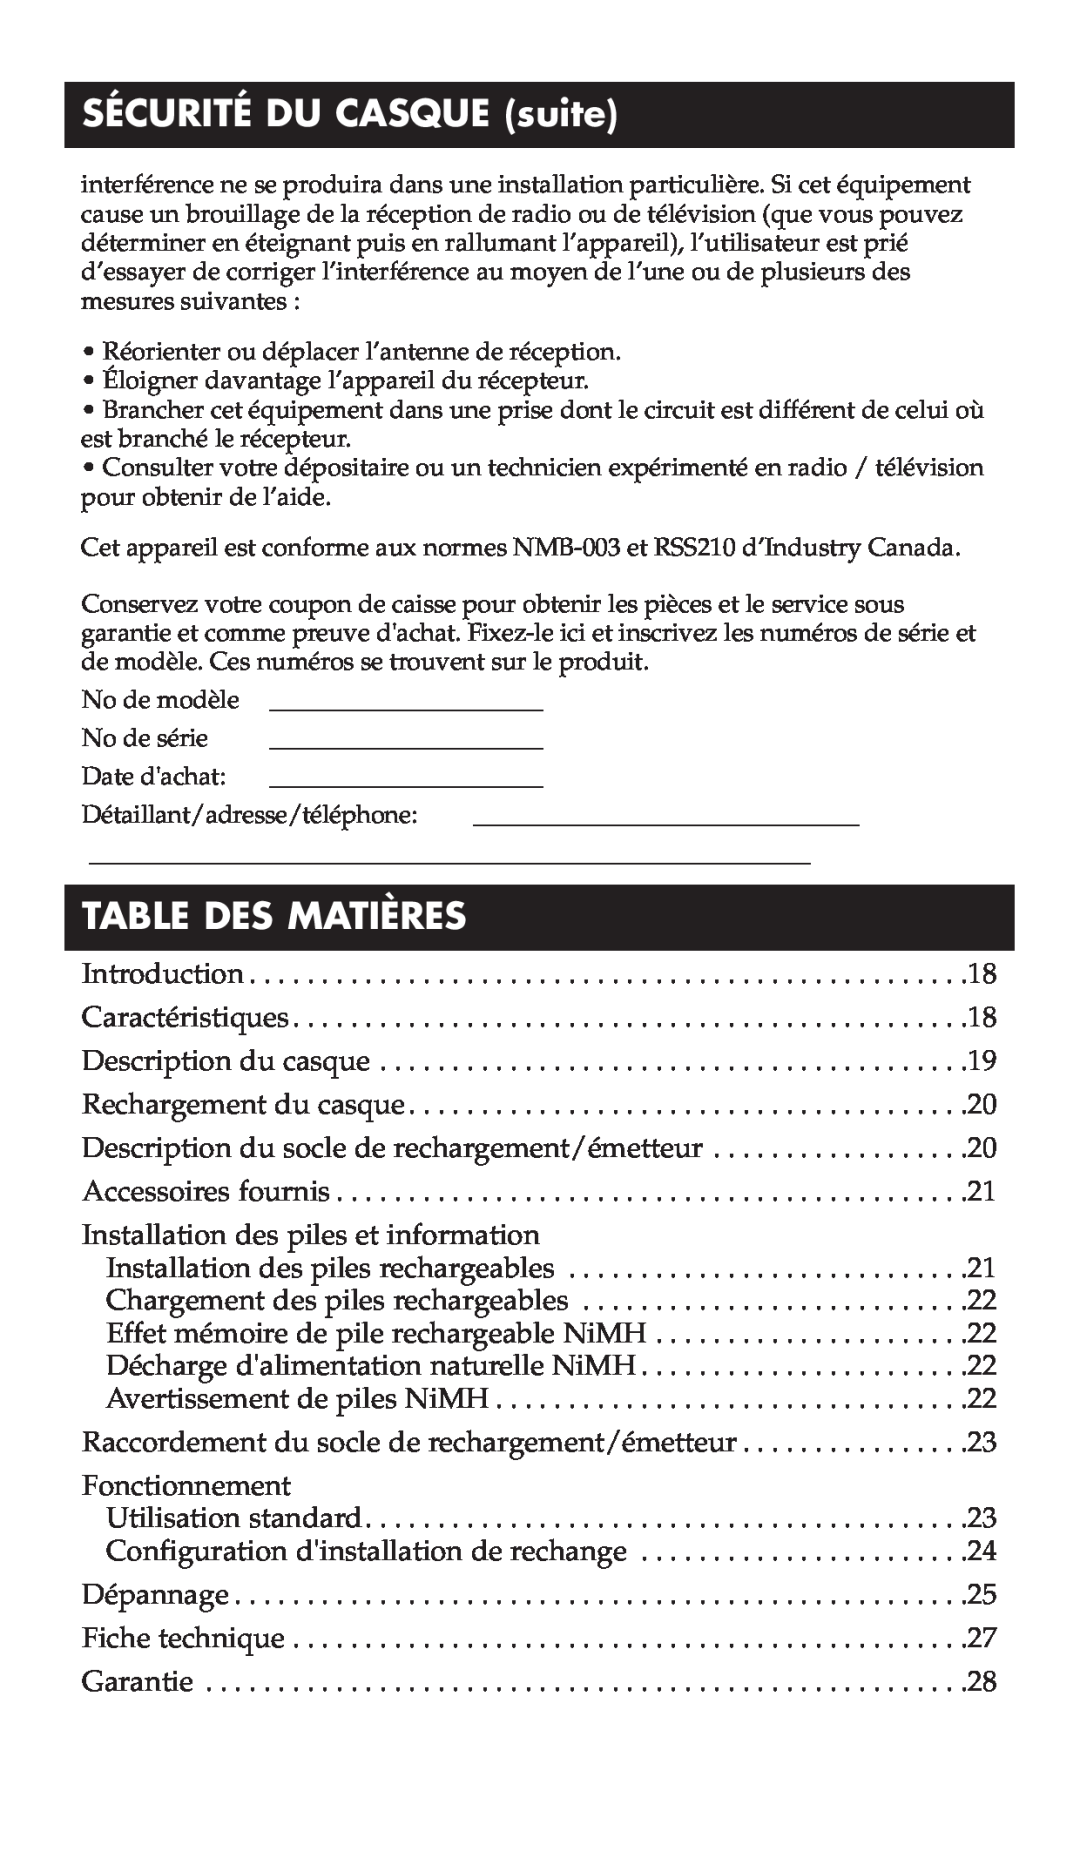 RCA WHP170, WHP175 manual SÉCURITÉ DU CASQUE suite, Table Des Matières 